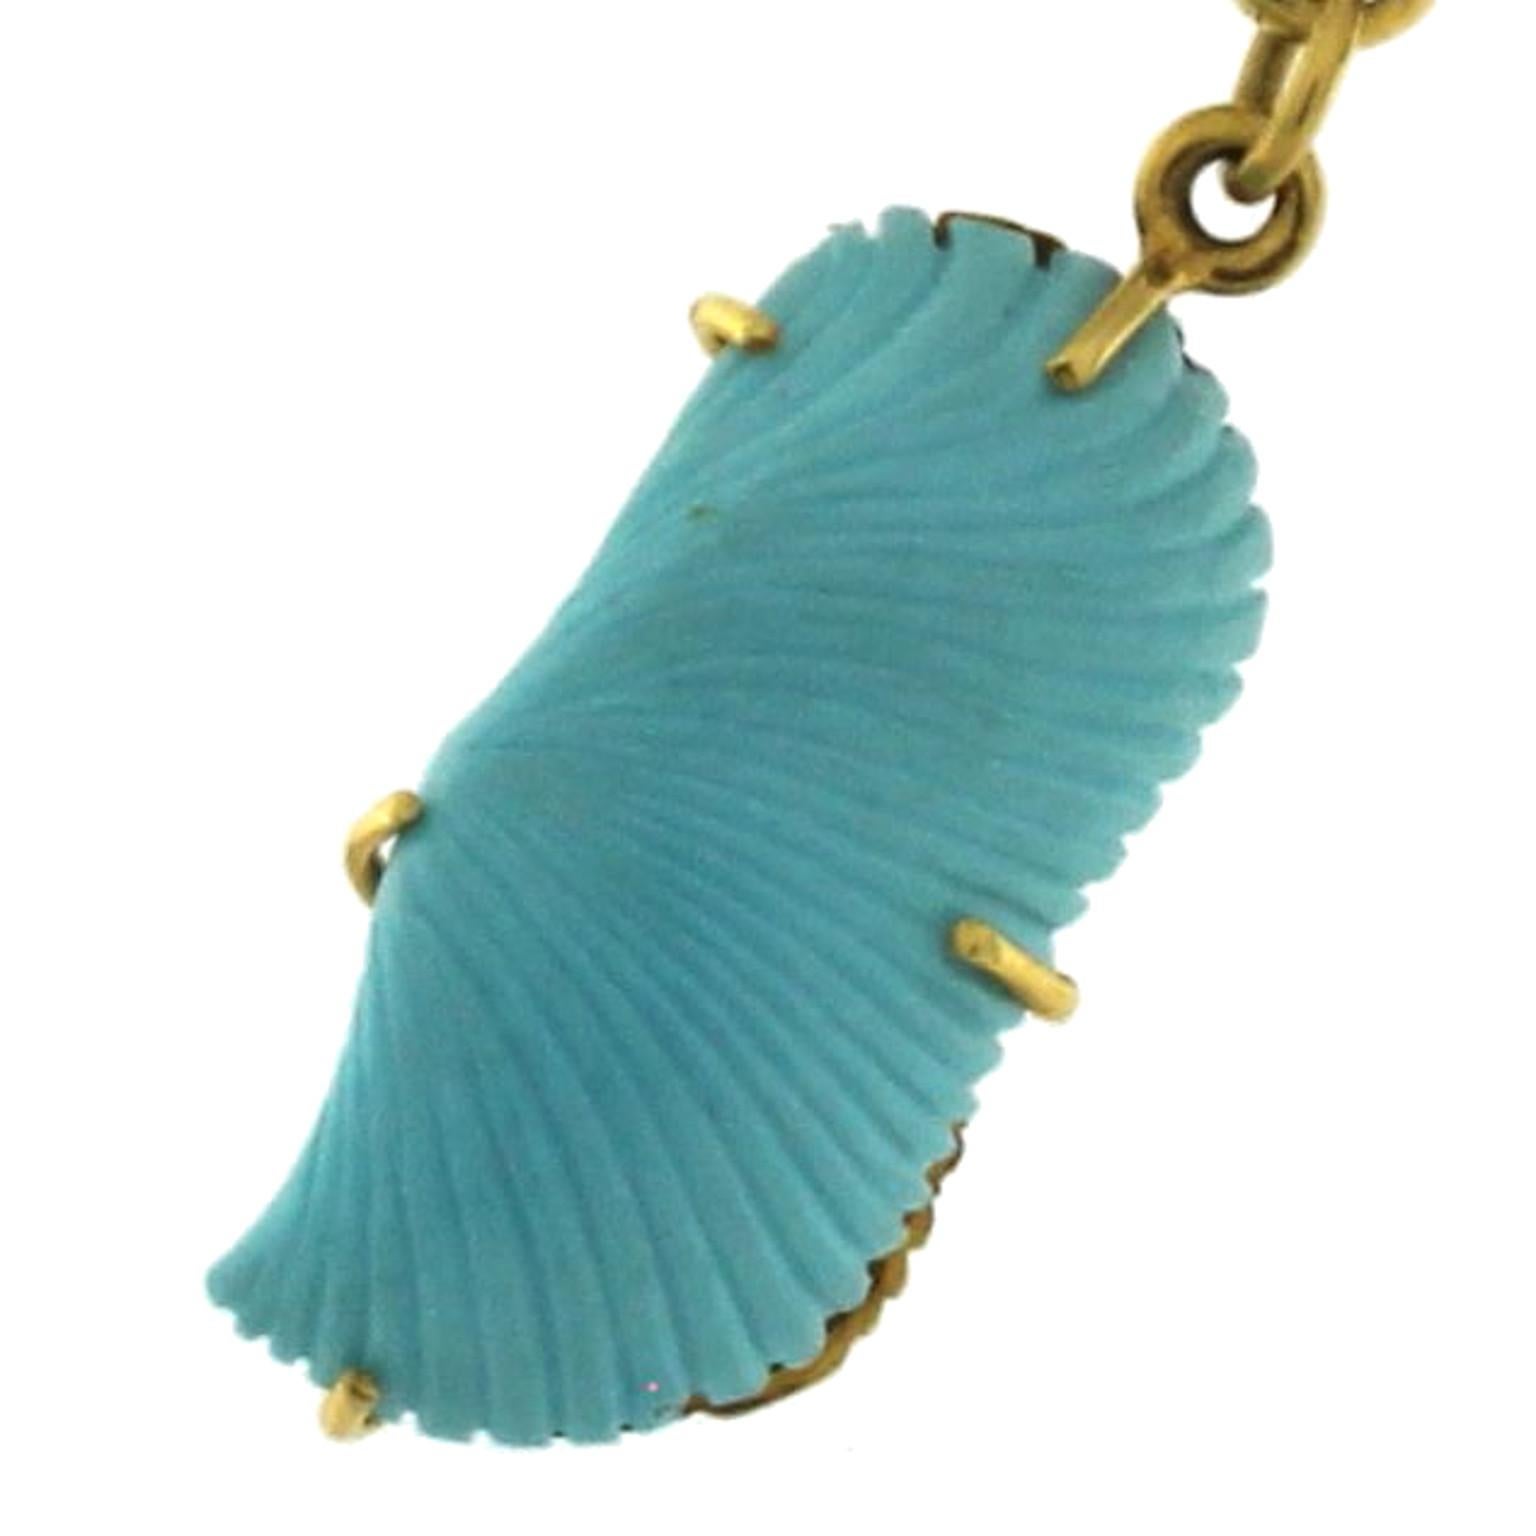 Ce magnifique collier de la collection Beachwear reproduit des éléments marins alternativement en turquoise et en or, pour les deux matériaux le sculpteur a fait un excellent travail de reproduction réaliste très fidèle. Le résultat est